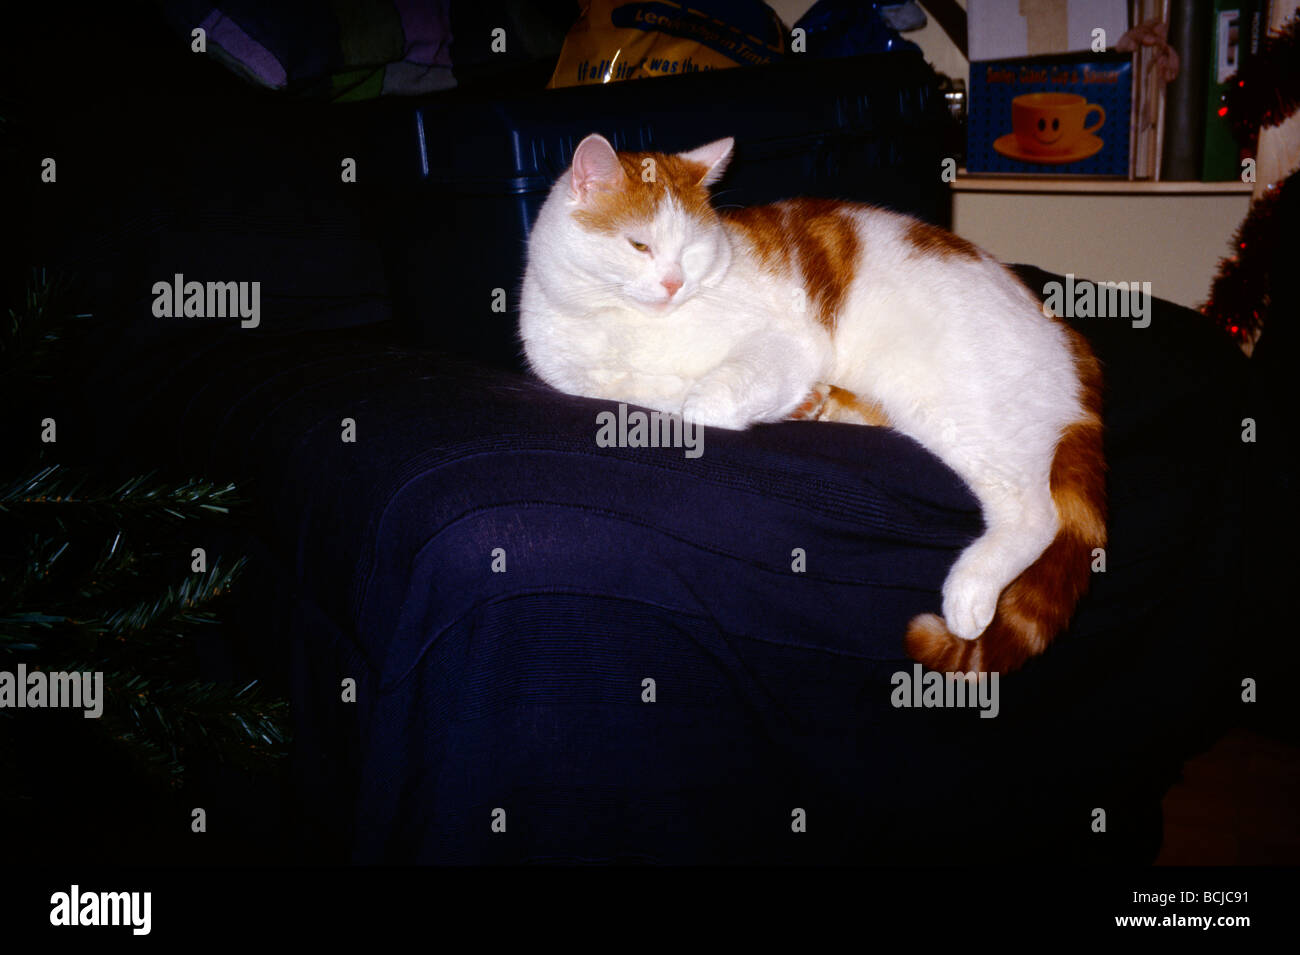 Sleepy Cat Ginger & White Tom Stock Photo